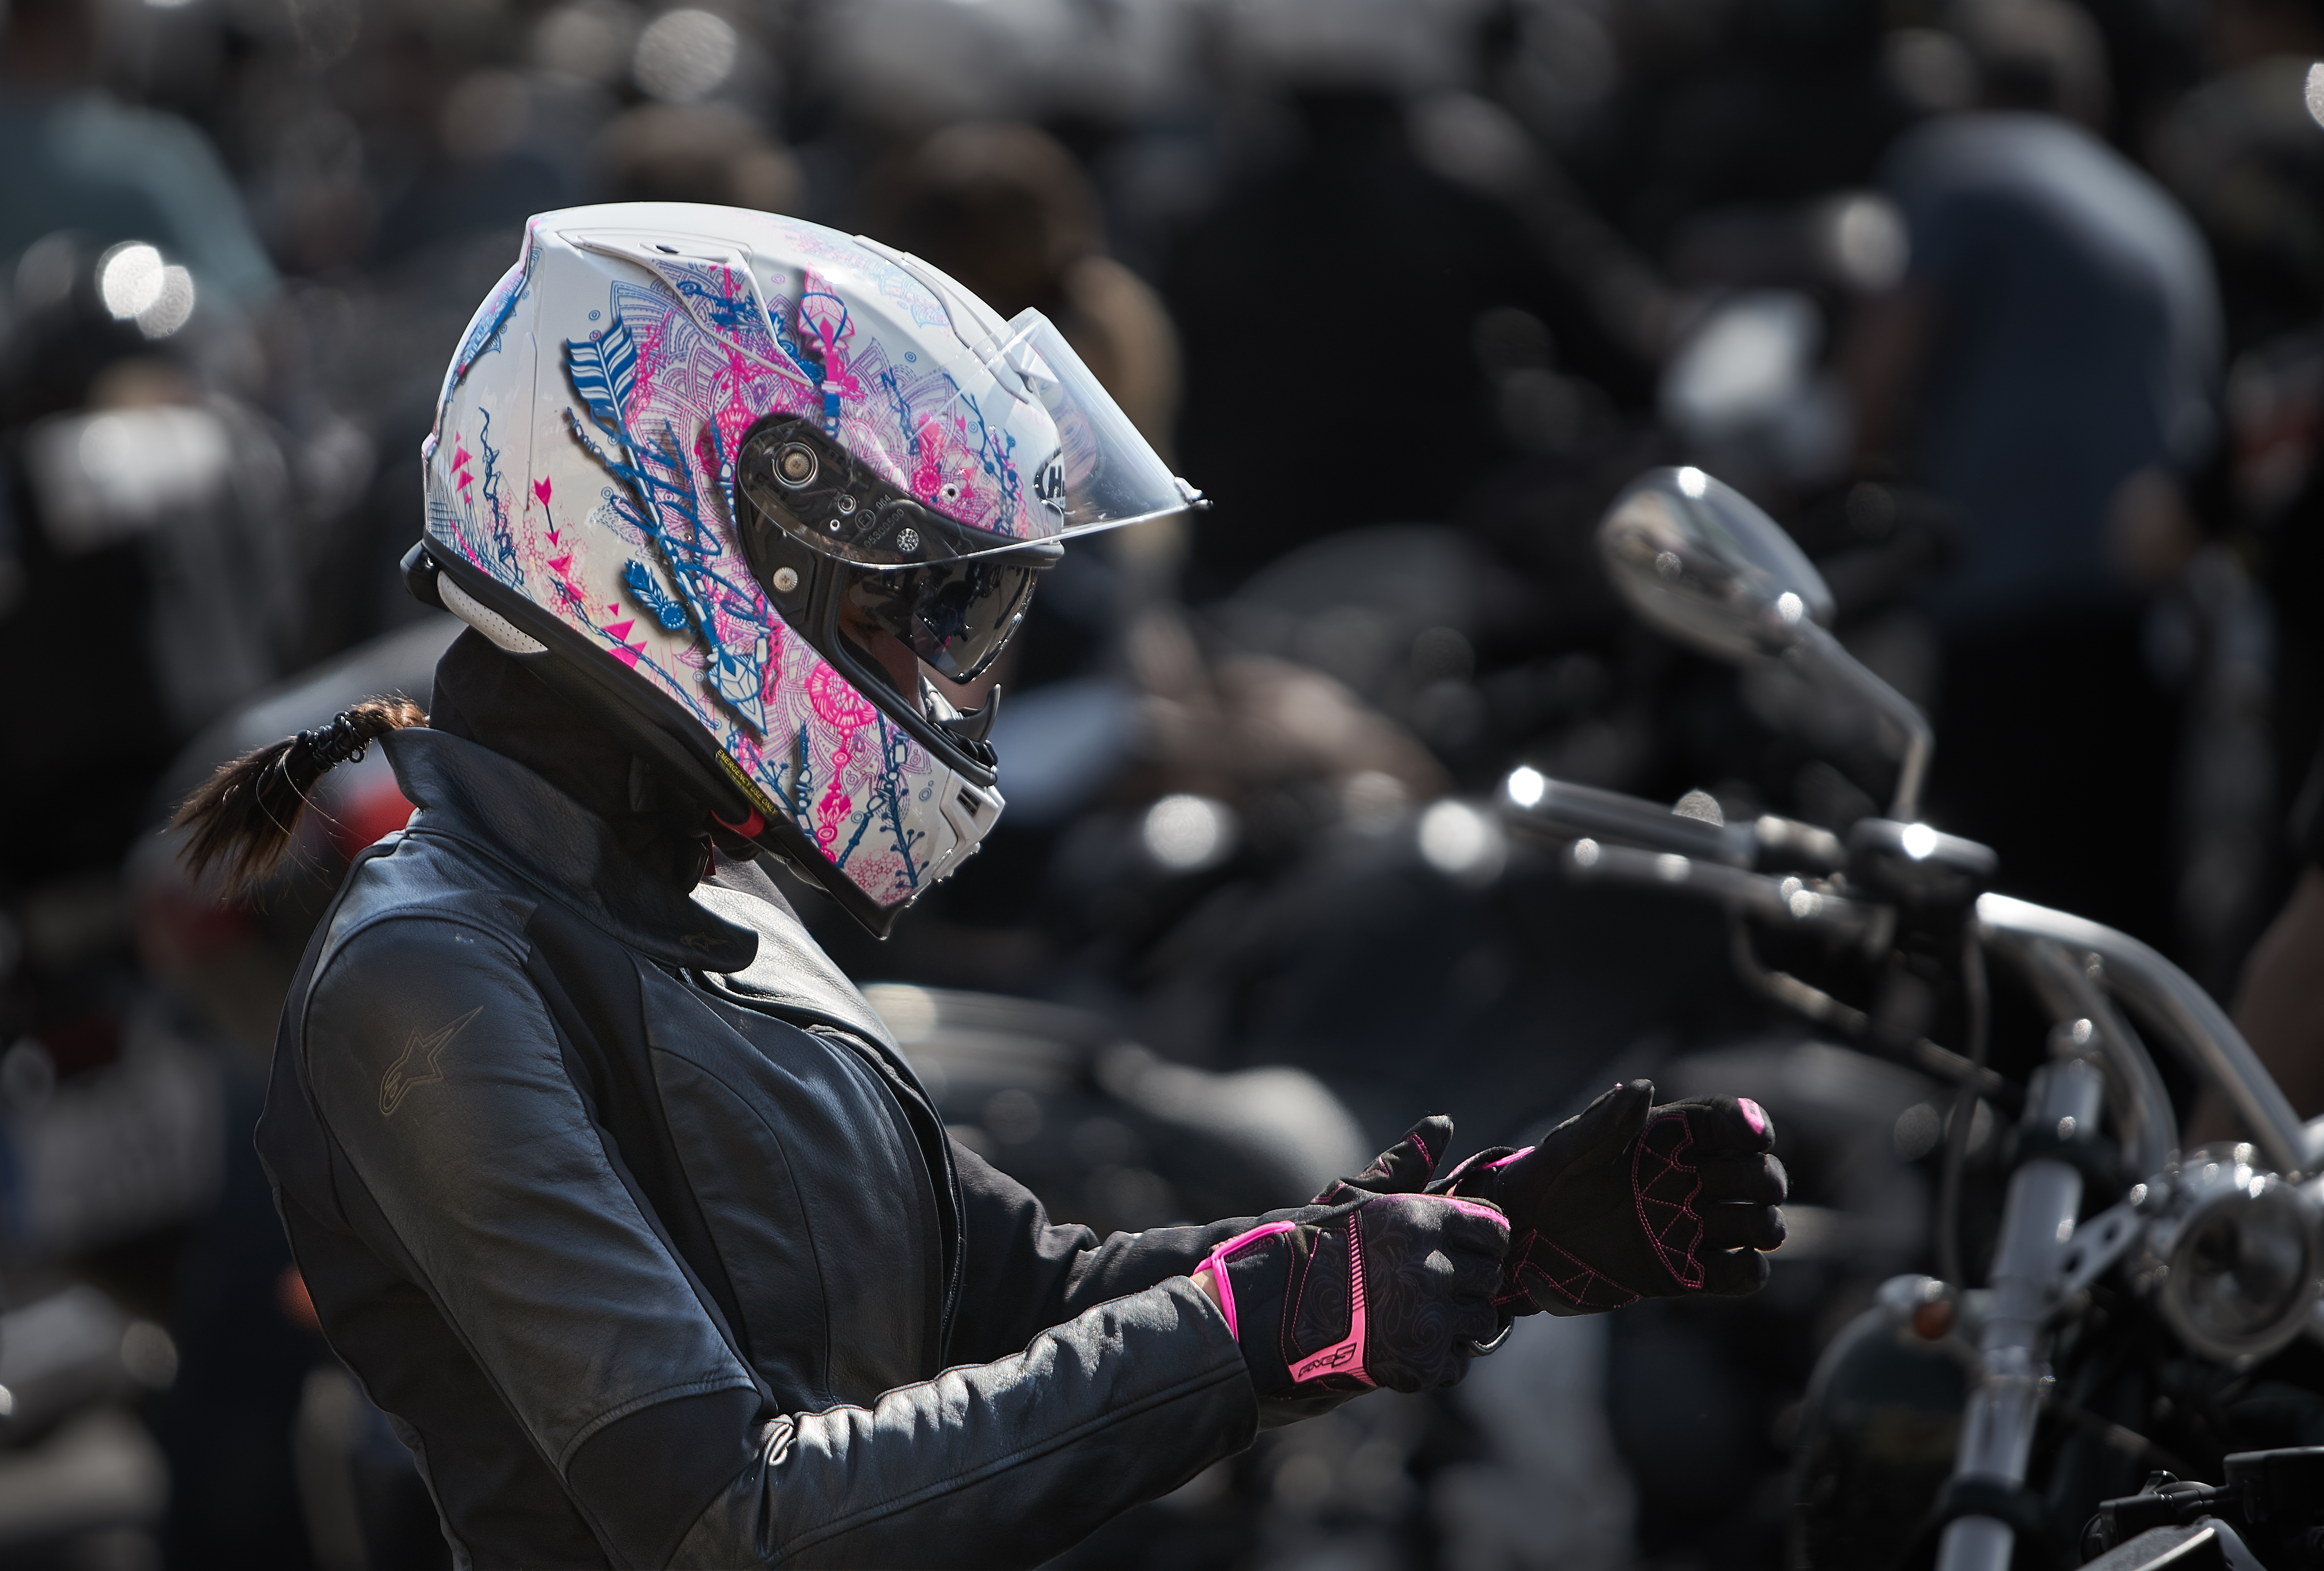 Veste de moto pour femme : un accessoire de moto branché